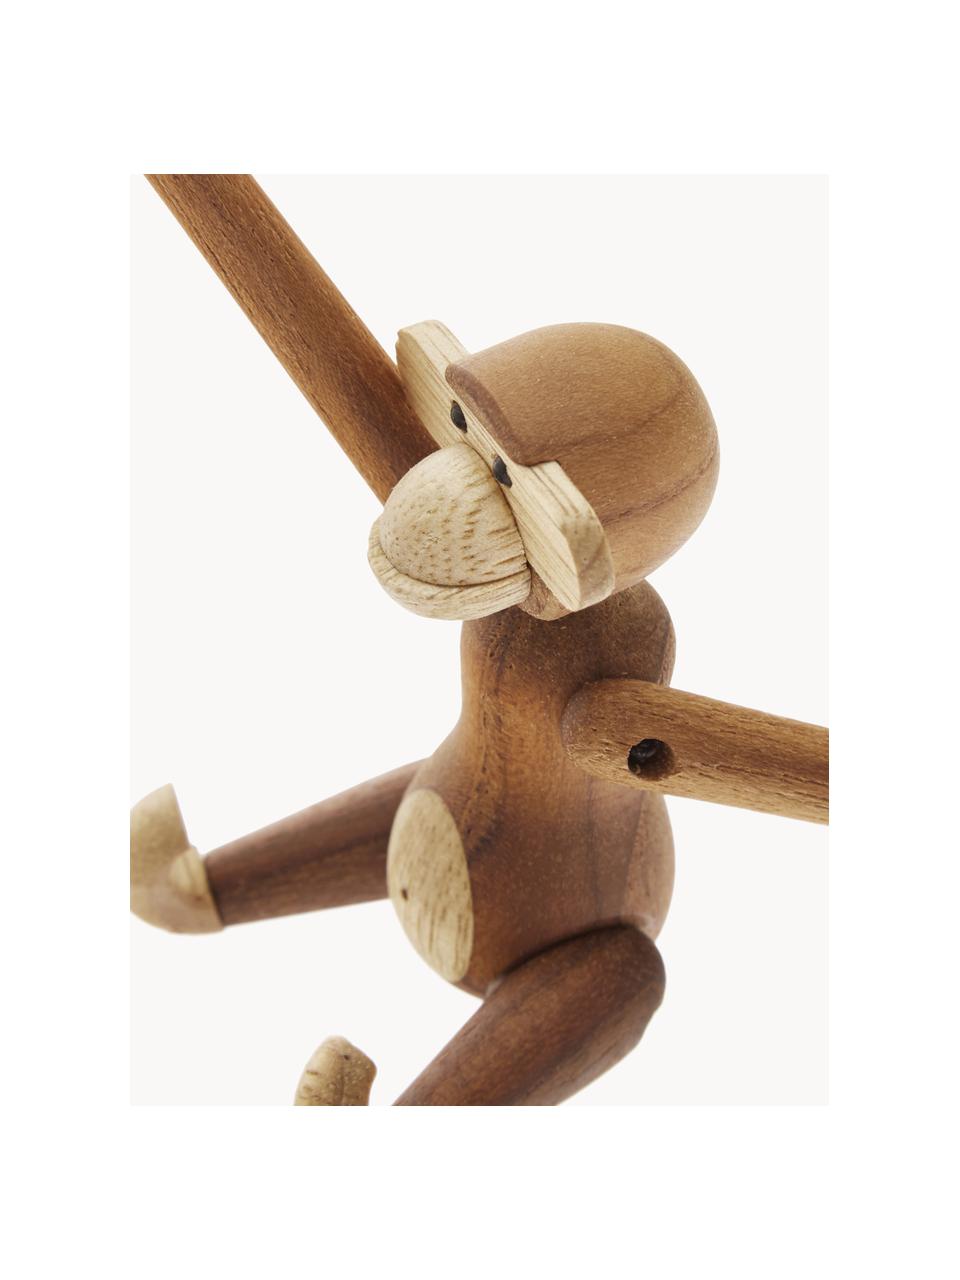 Dekorácia z tíkového dreva Monkey, V 10 cm, Tíkové drevo, limbové drevo, lakované, s certifikátom FSC, Tíkové drevo, limba drevo, Š 10 x V 10 cm